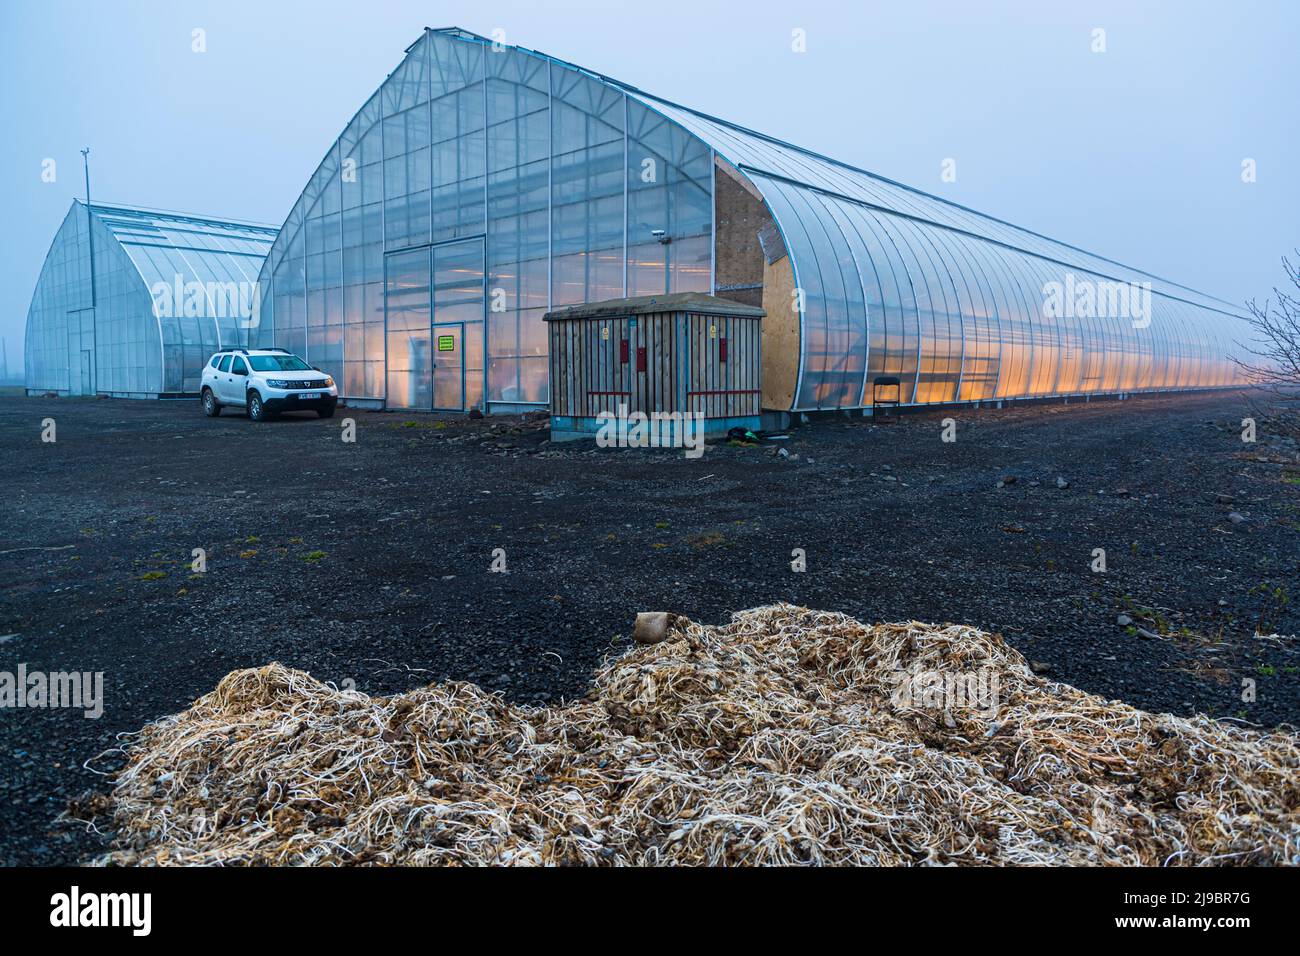 Das moderne Gewächshaus von Nordic Wasabi wird mit geothermischer Energie beheizt. Bewässerung und Beleuchtung werden vollautomatisch gesteuert Stockfoto